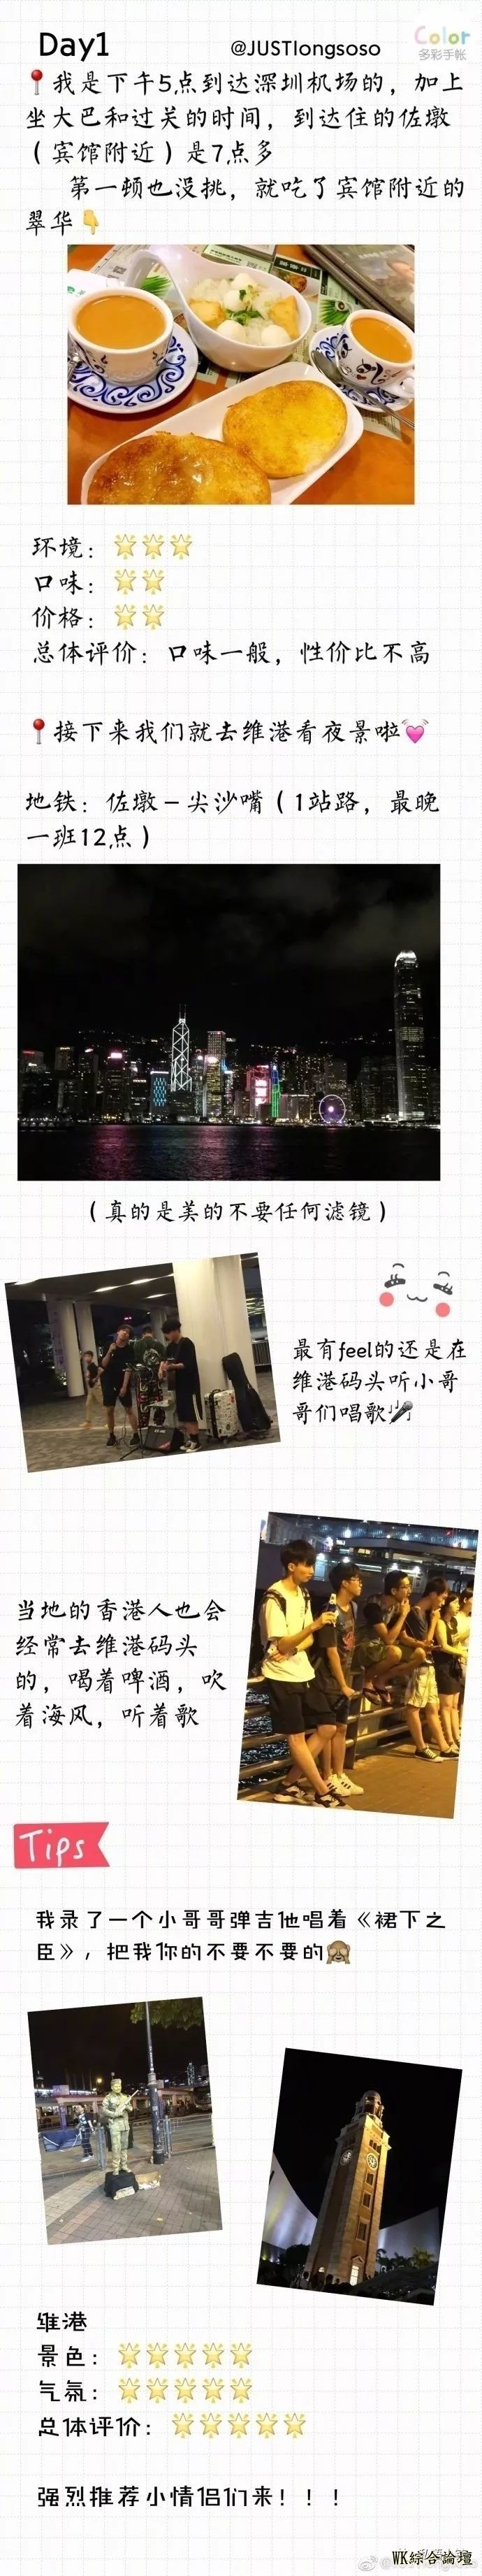 【小镇旅行】香港旅游攻略-4.jpg